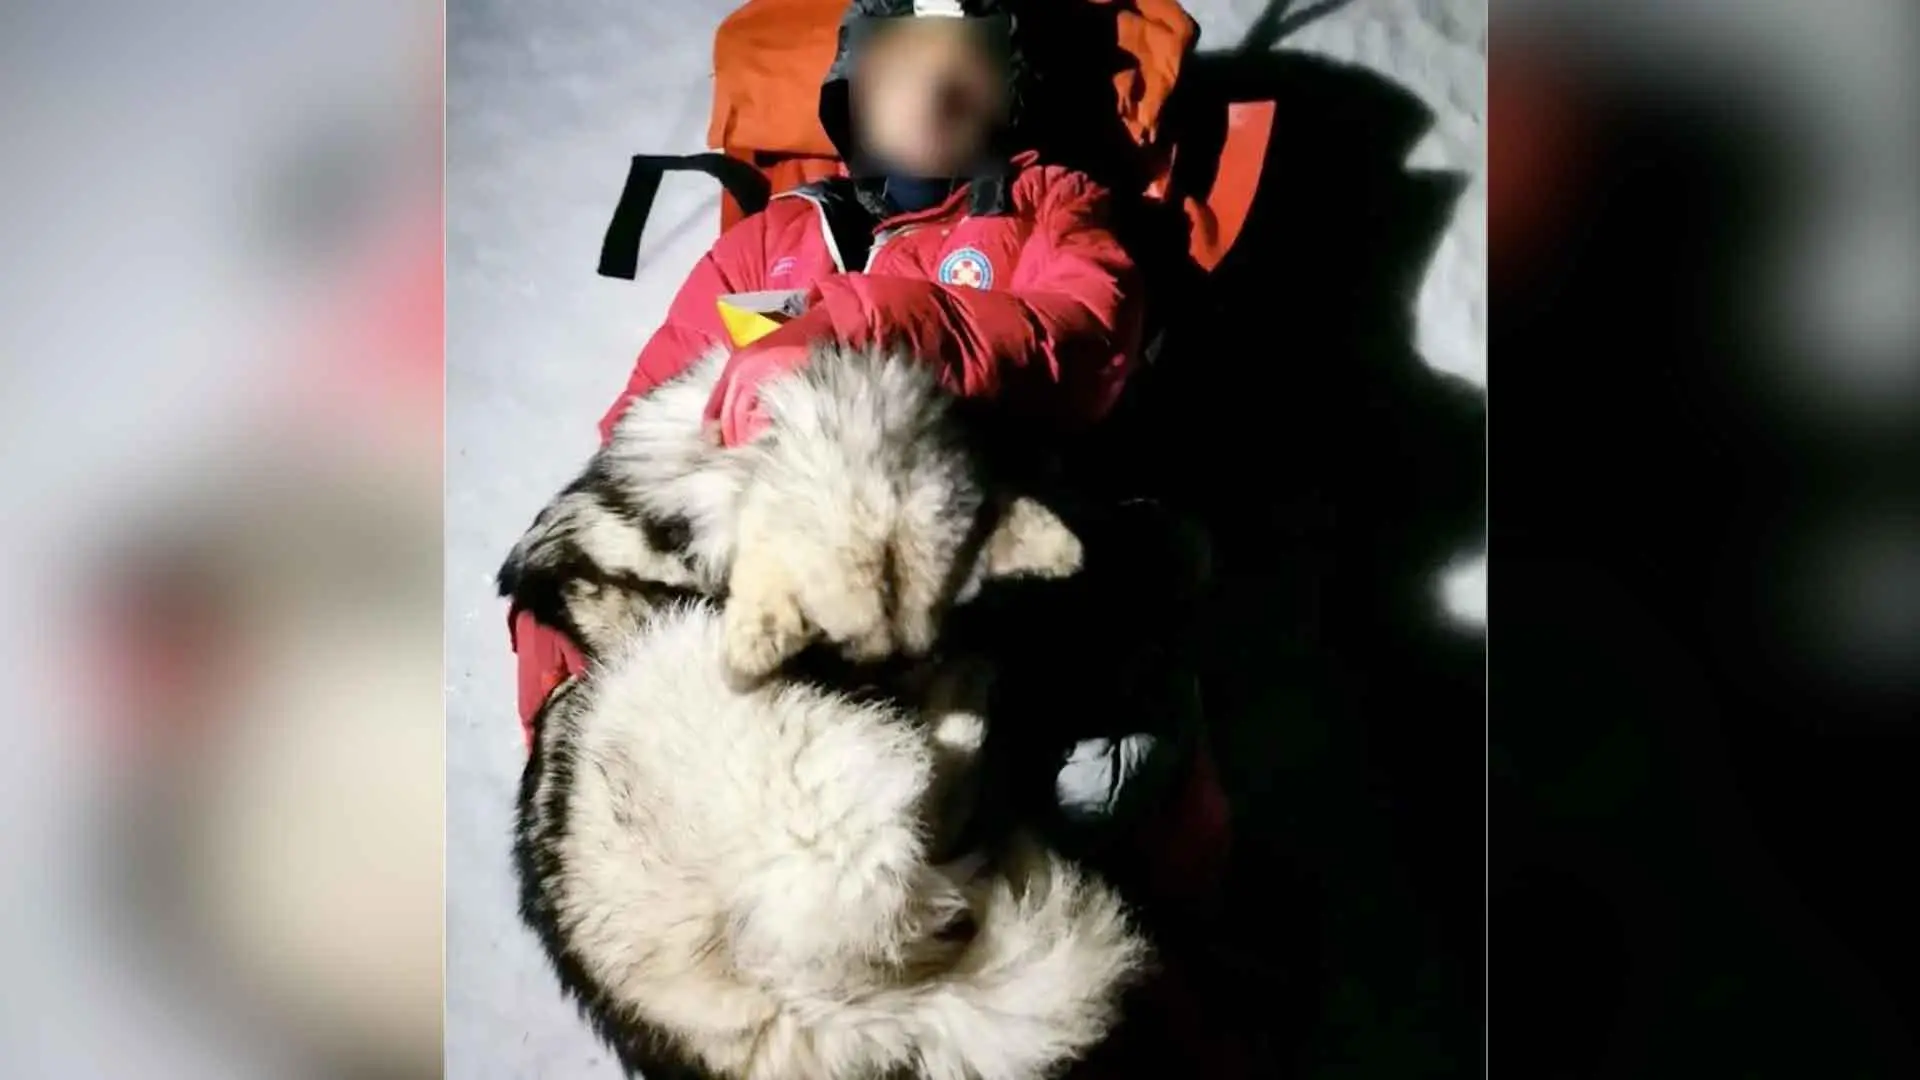 Increíble historia del perro que salvó a excursionista que cayó de una montaña: le brindó calor 13 horas